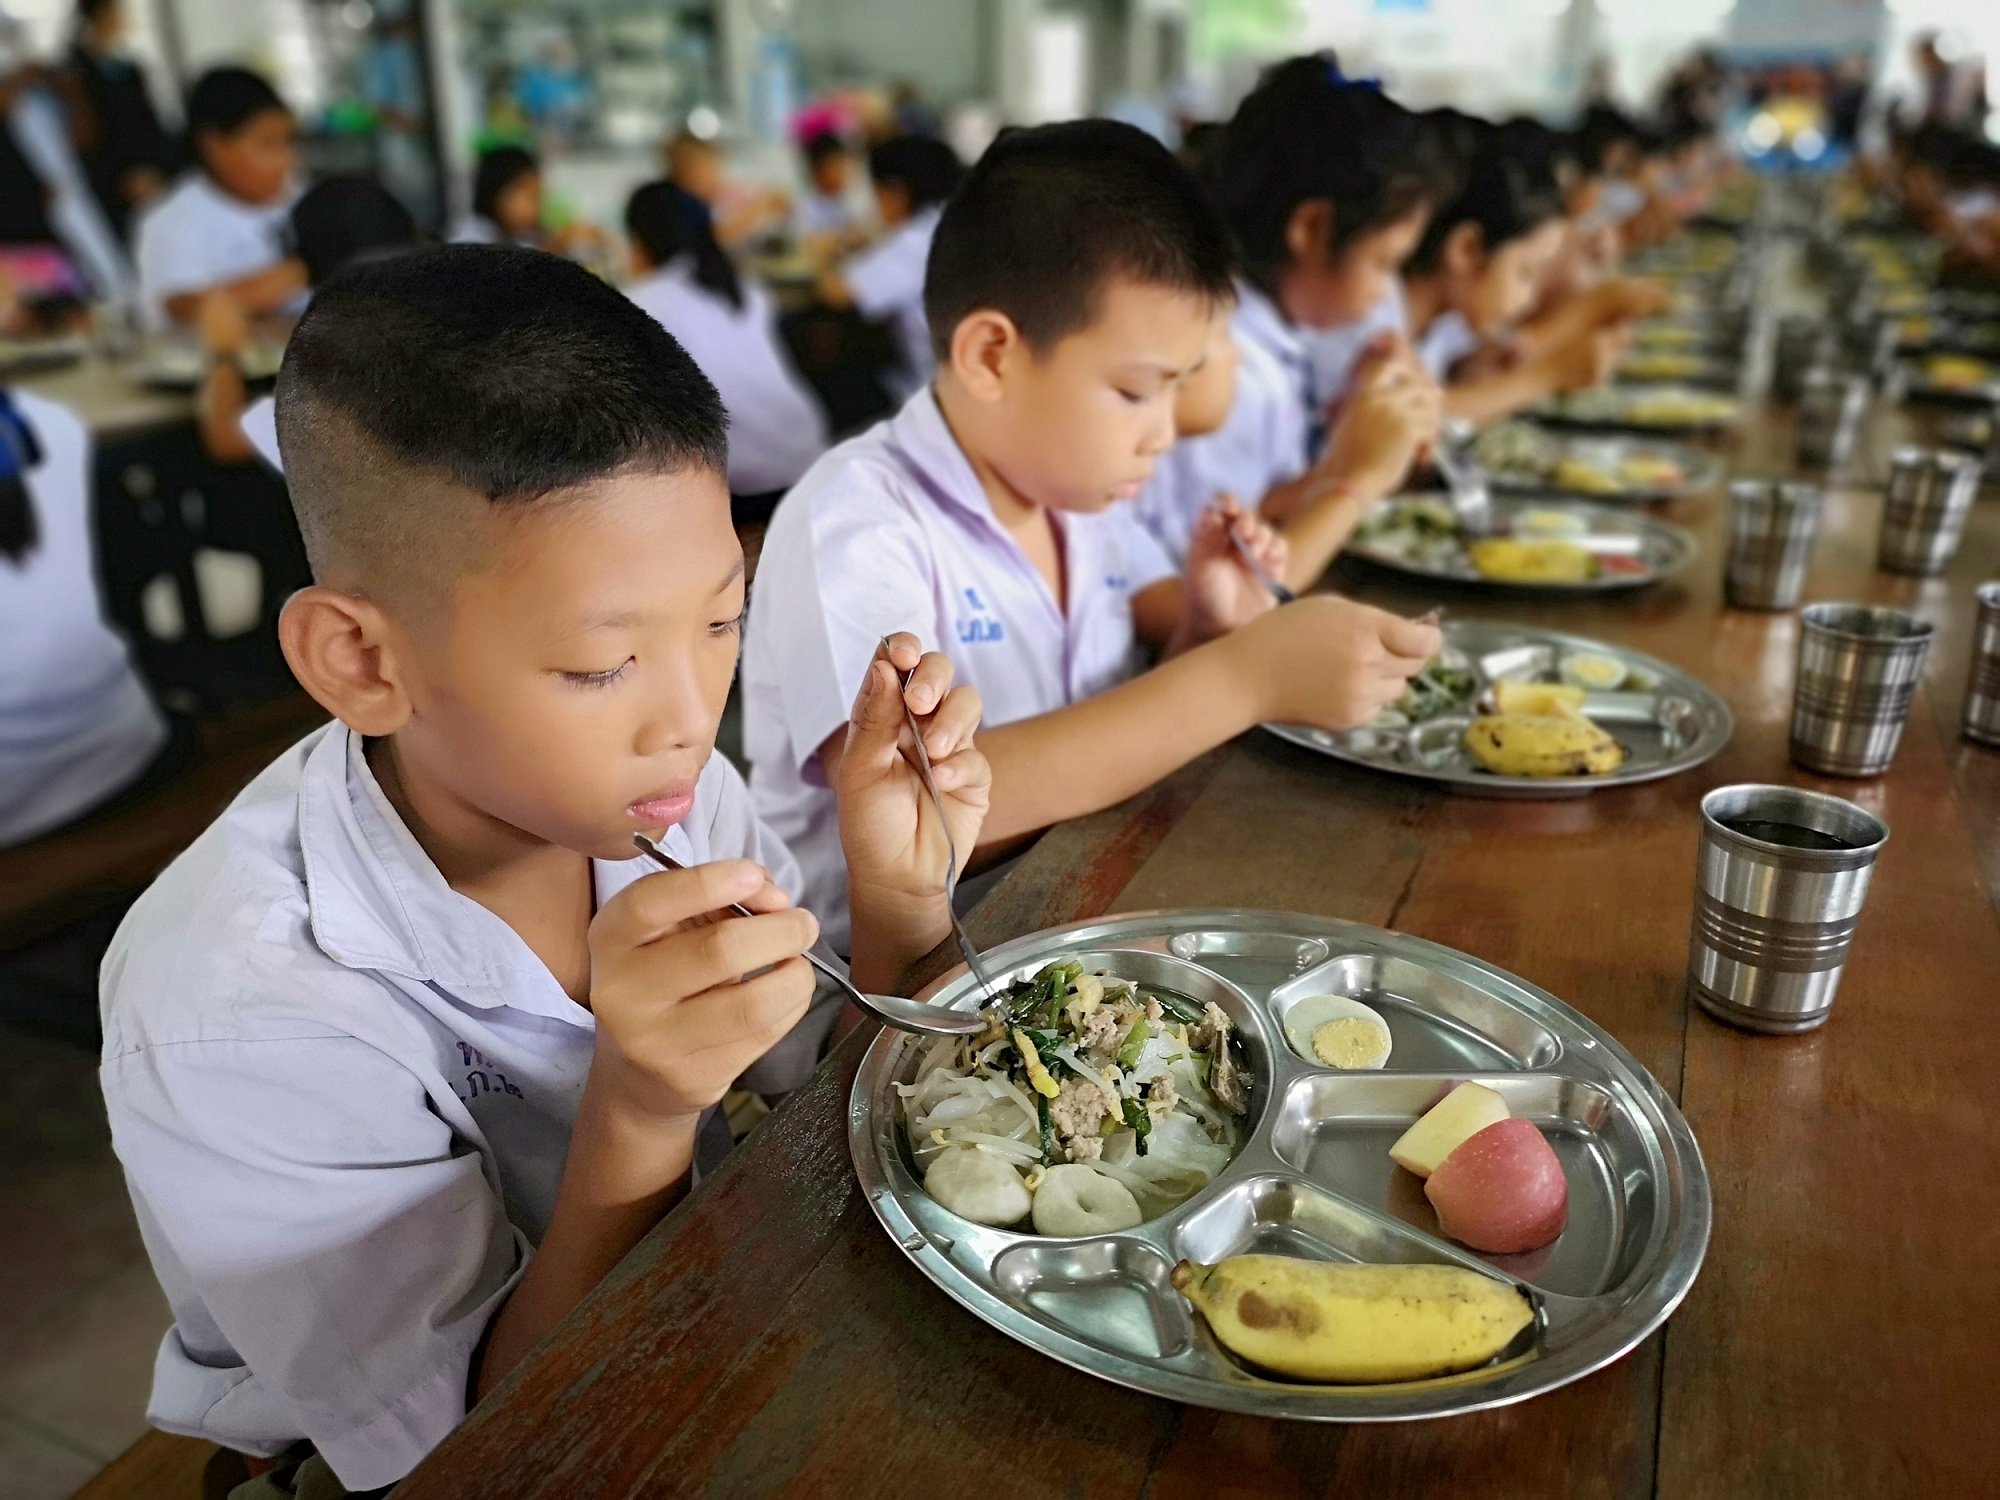 อาหารกลางวัน 20 บาท กับ Thai School Lunch thaihealth